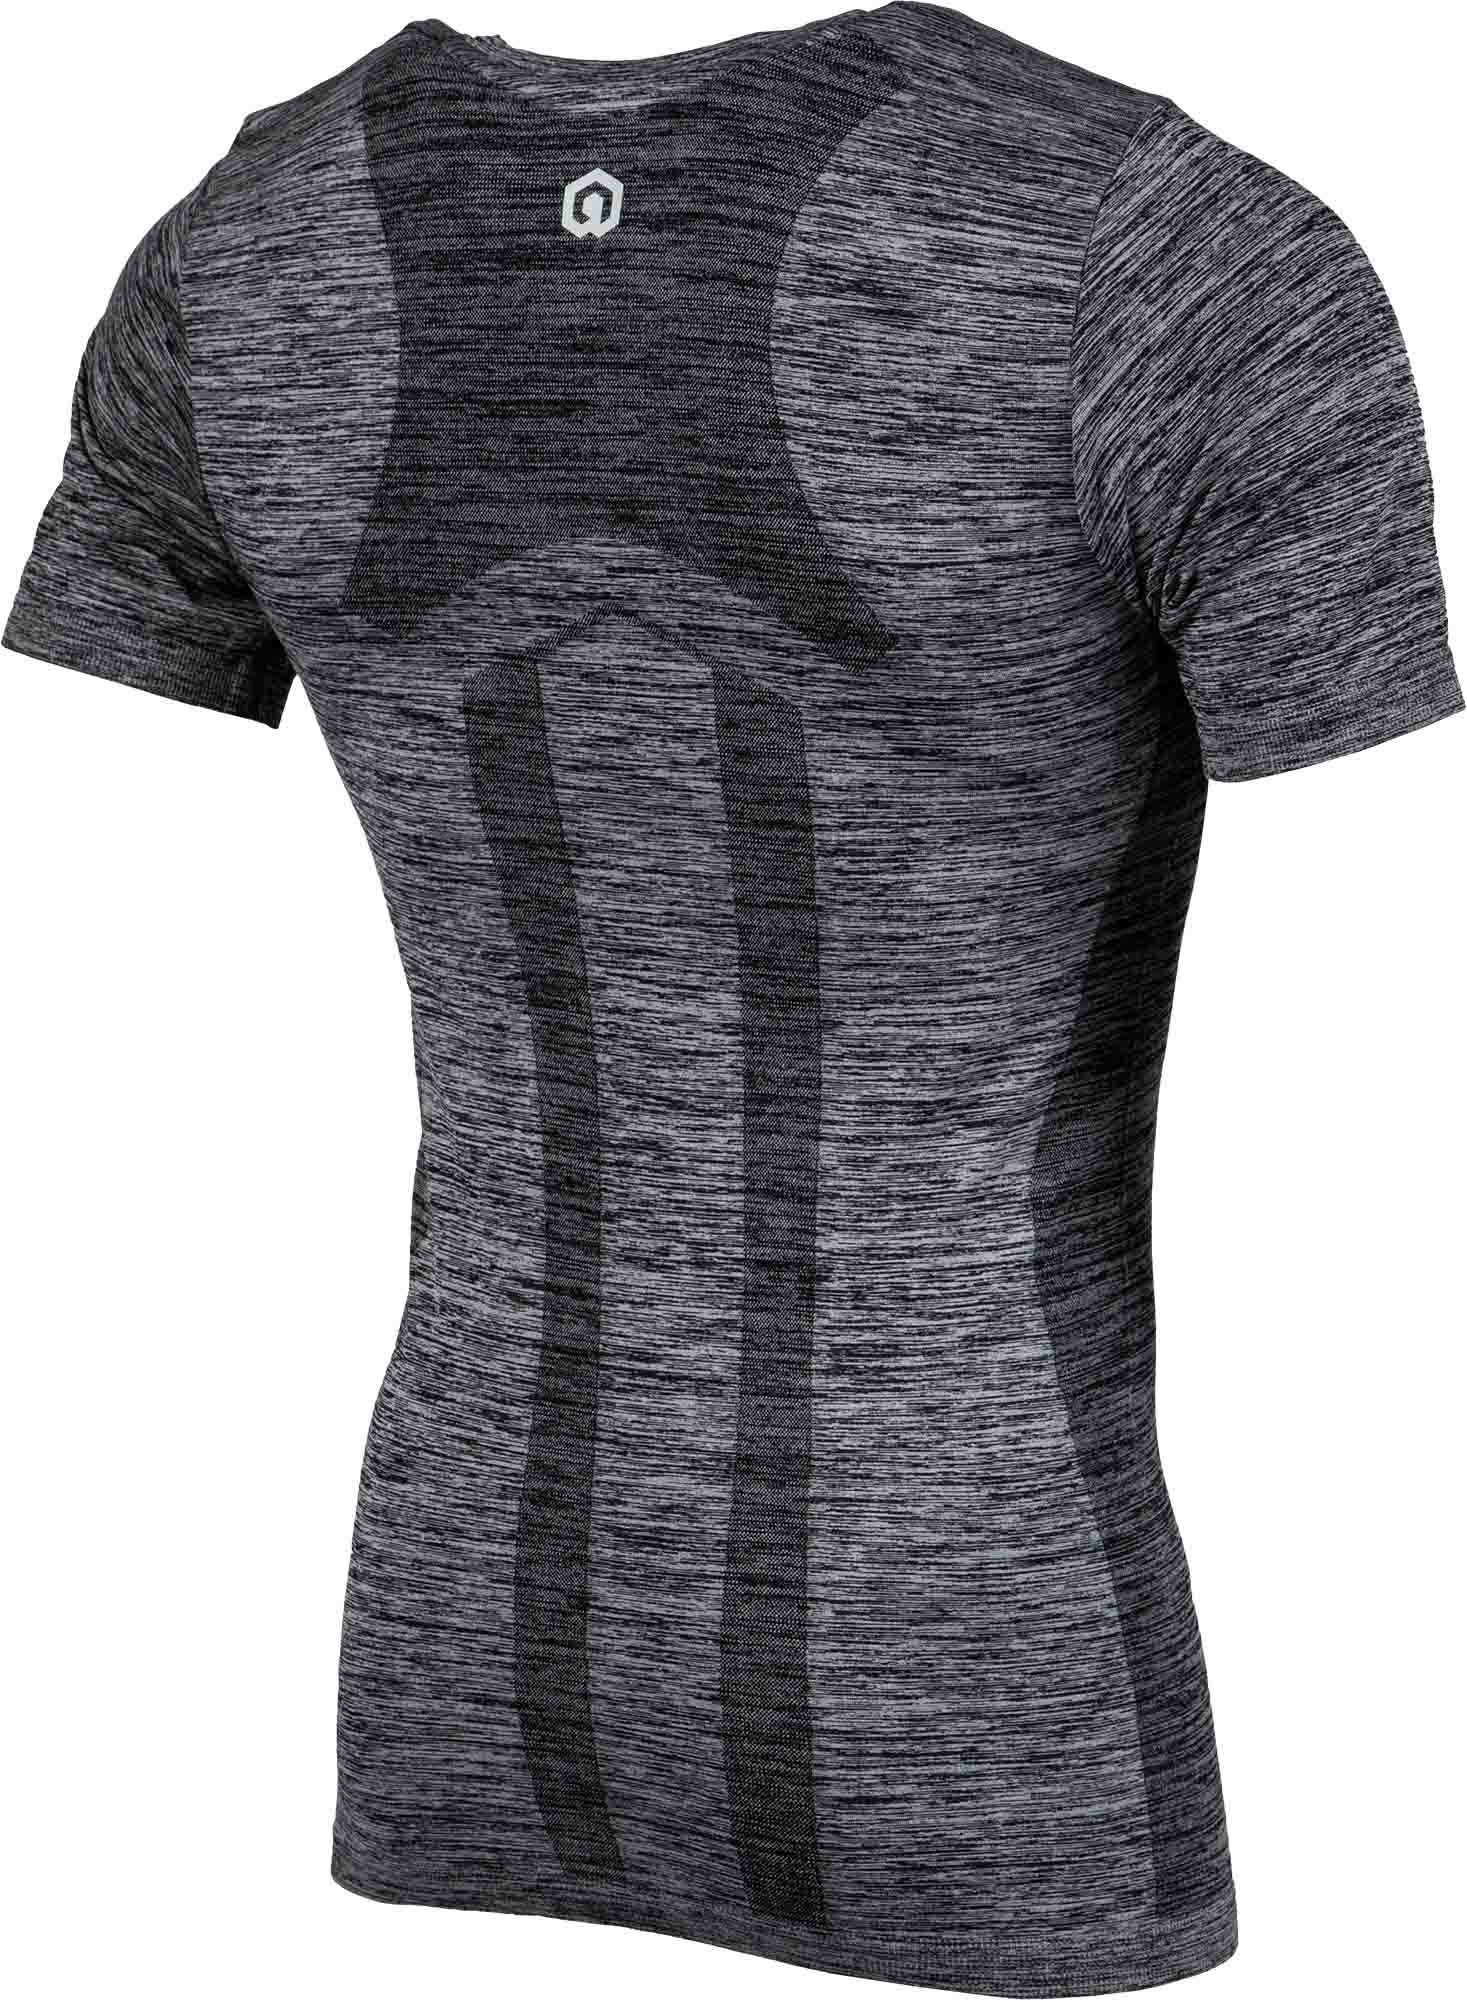 Men’s short-sleeved functional T-shirt